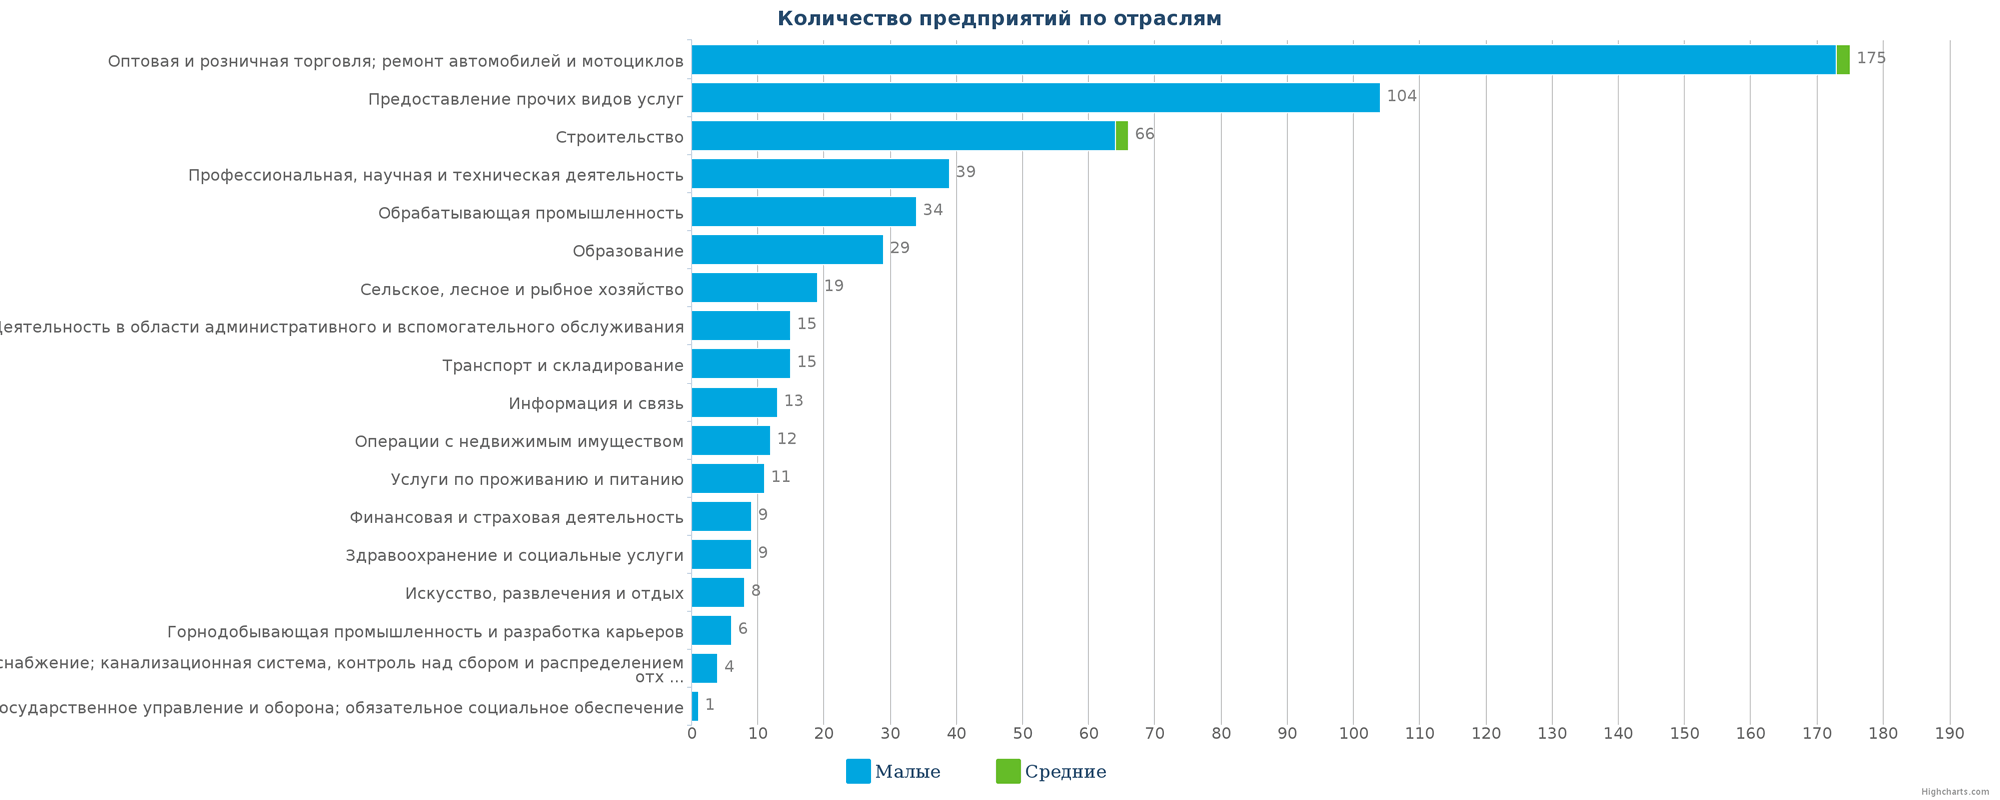 Новые организации в базе данных Казахстана